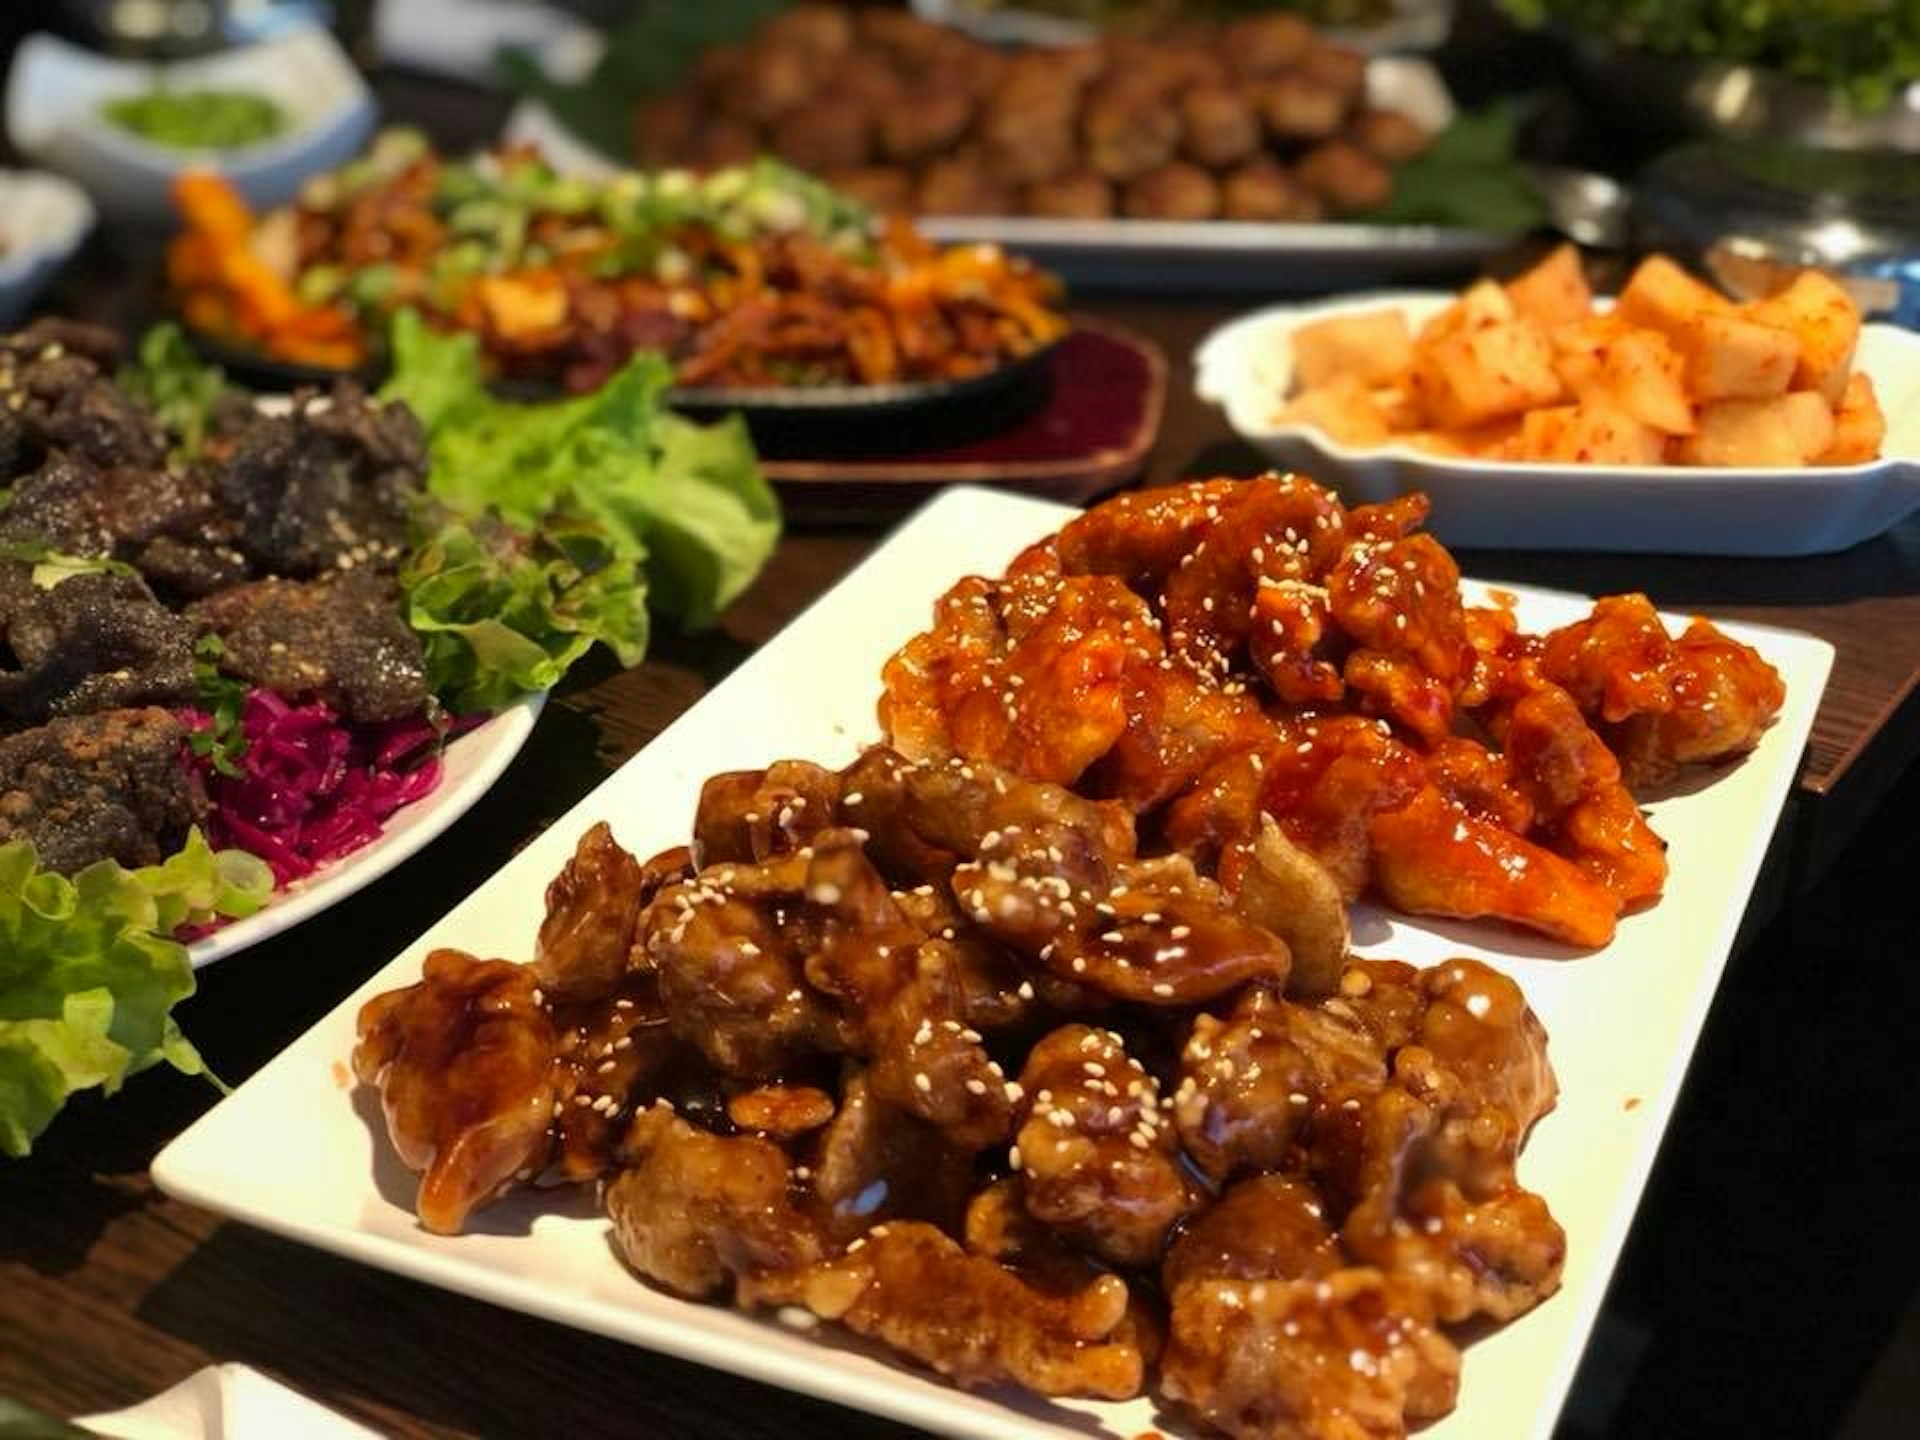 Downtowner Food Sie Hoon Youn